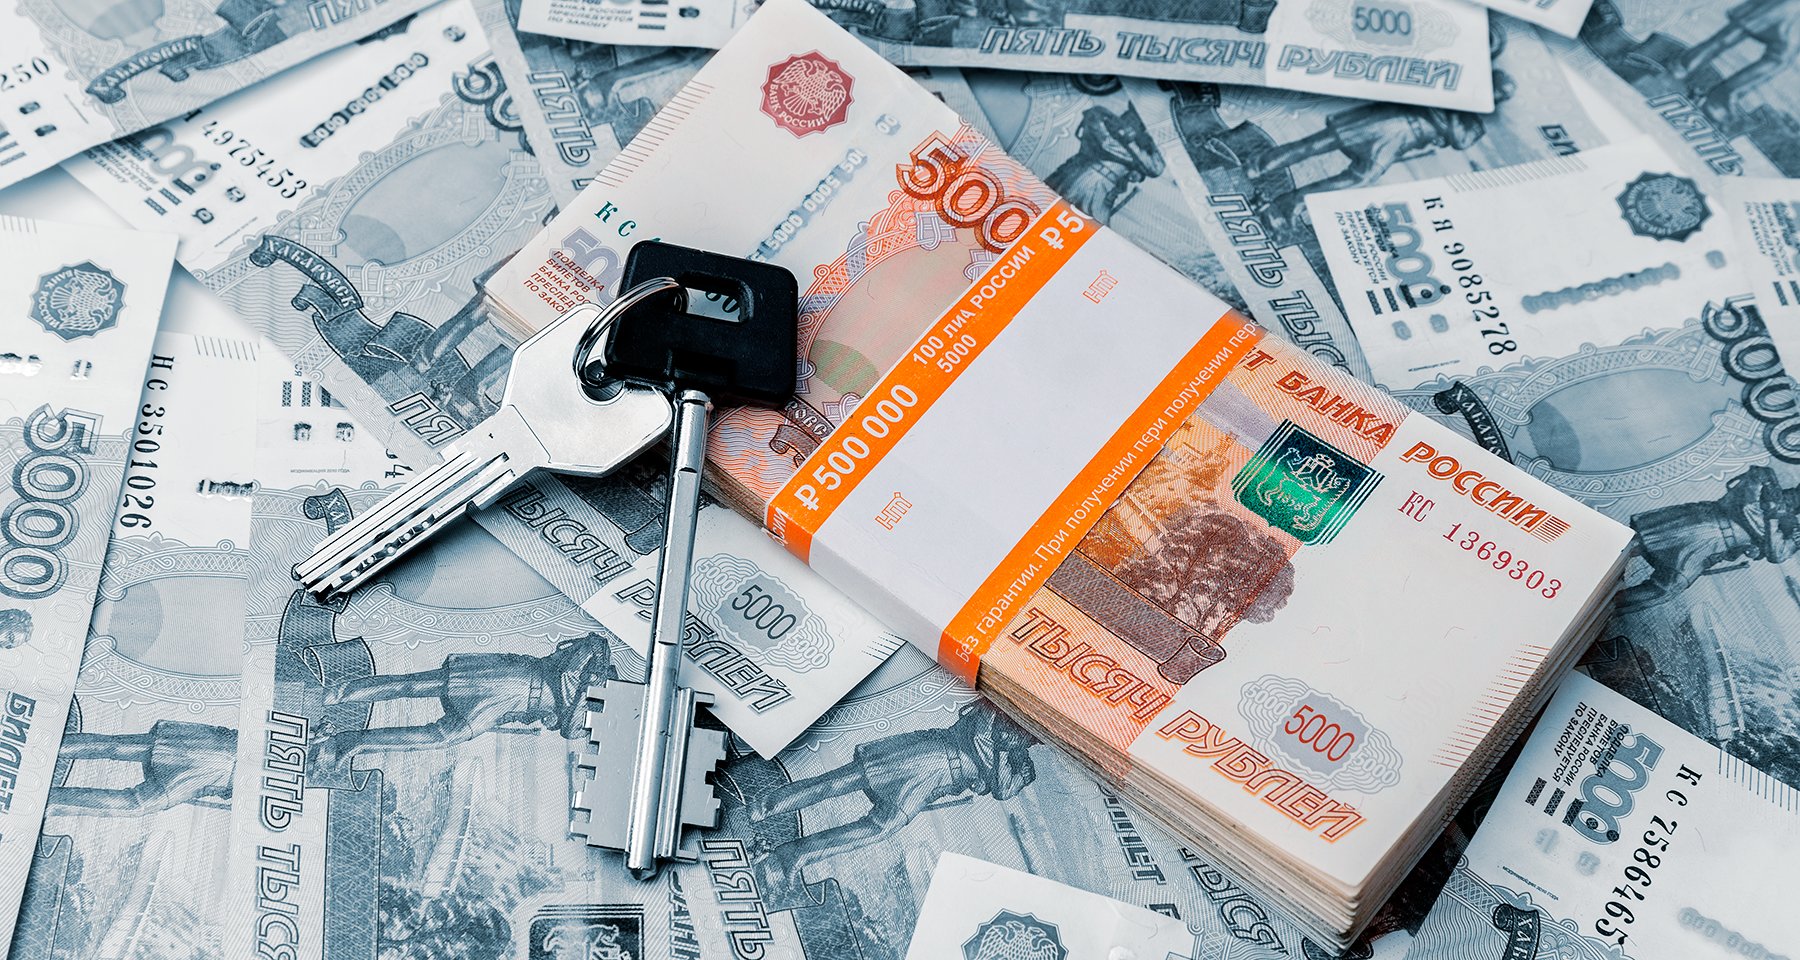 Потребительские кредиты под залог недвижимости: 8 выгодных предложений |  Аналитические исследования | Банки.ру